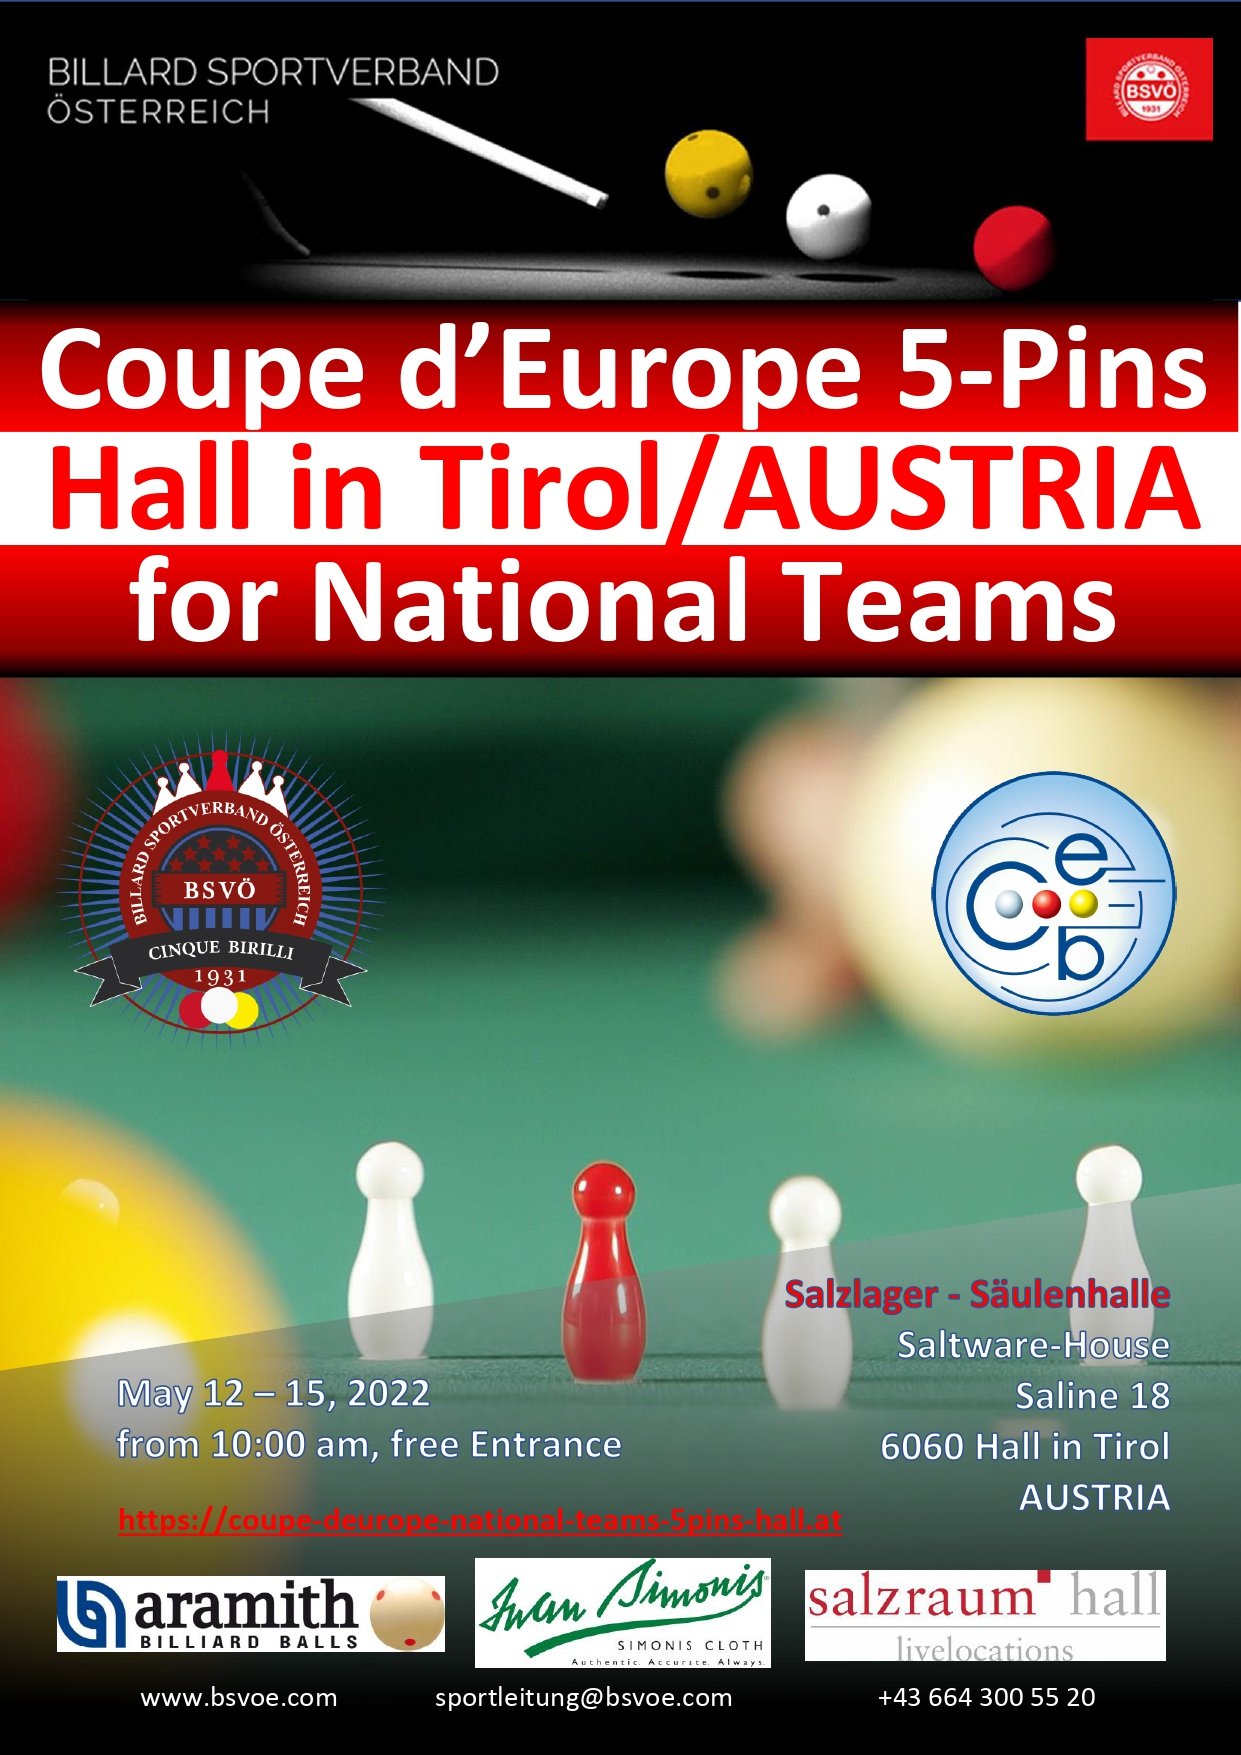 COUPE D’EUROPE 5 PINS FOR NATIONAL TEAMS - LA SPEDIZIONE DEGLI AZZURRI IN AUSTRIA